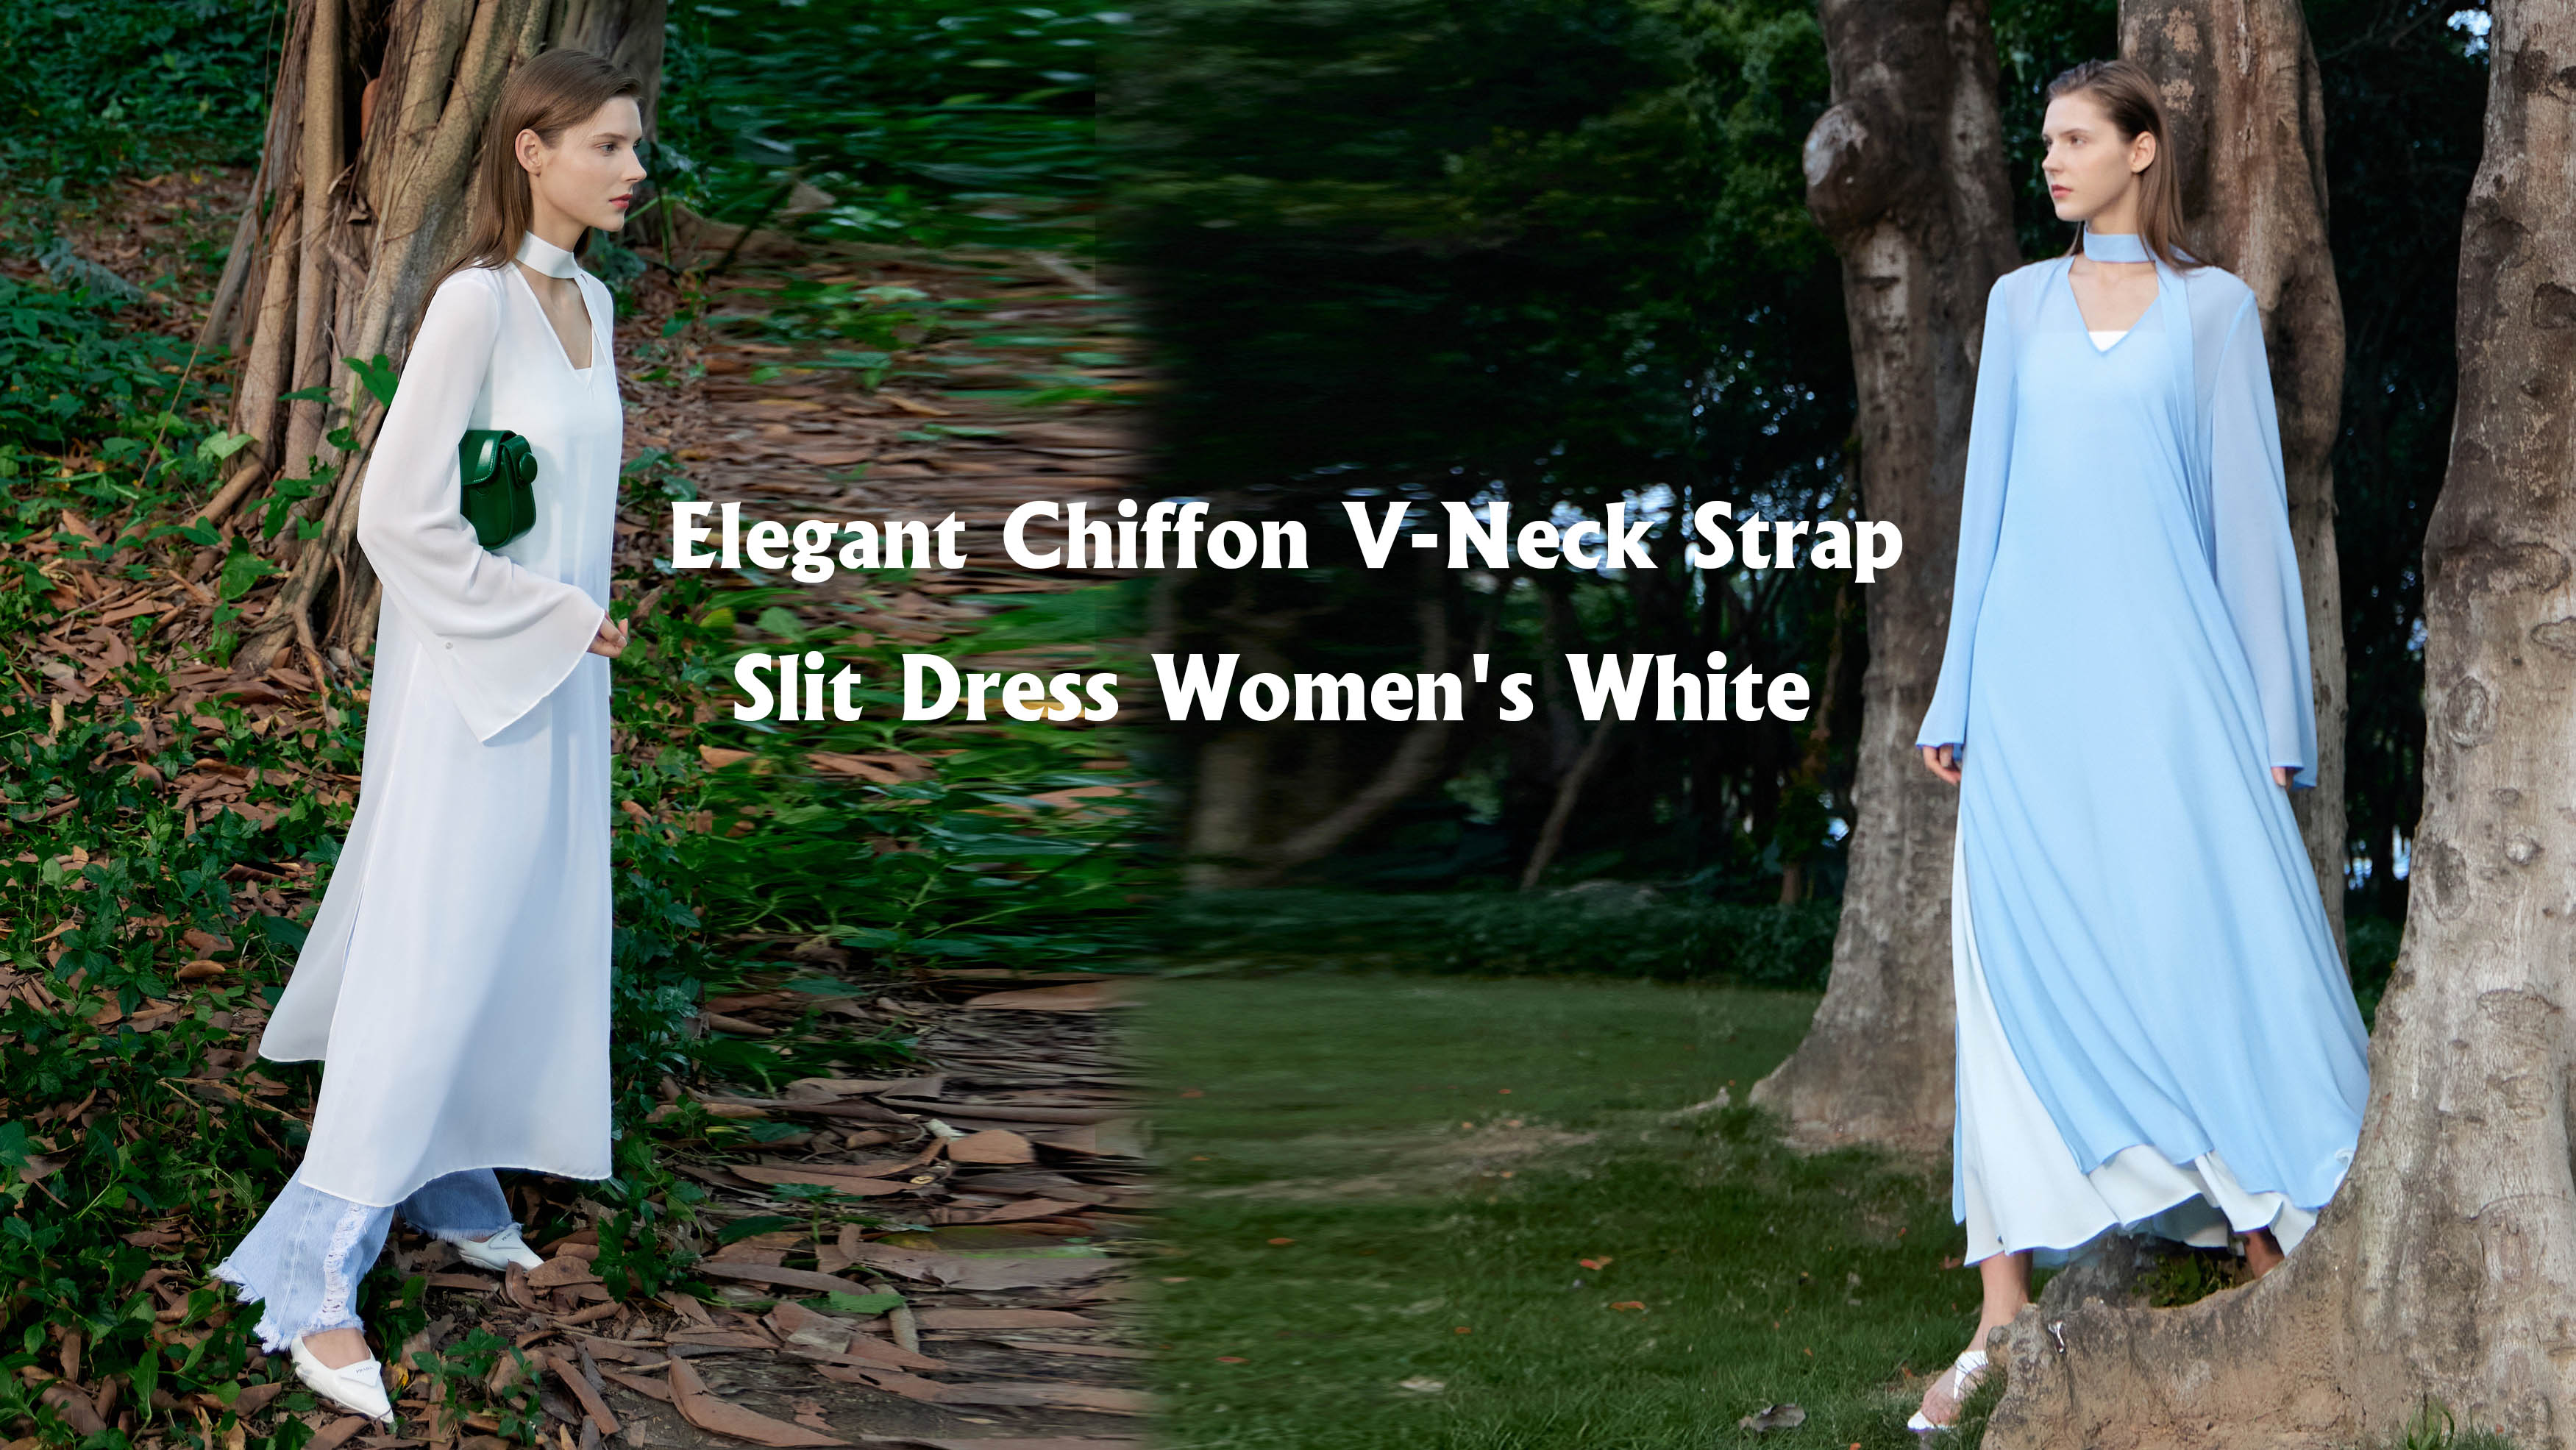 Bester eleganter Chiffon-V-Ausschnitt-Riemen-Schlitzkleid für Damen in Weiß